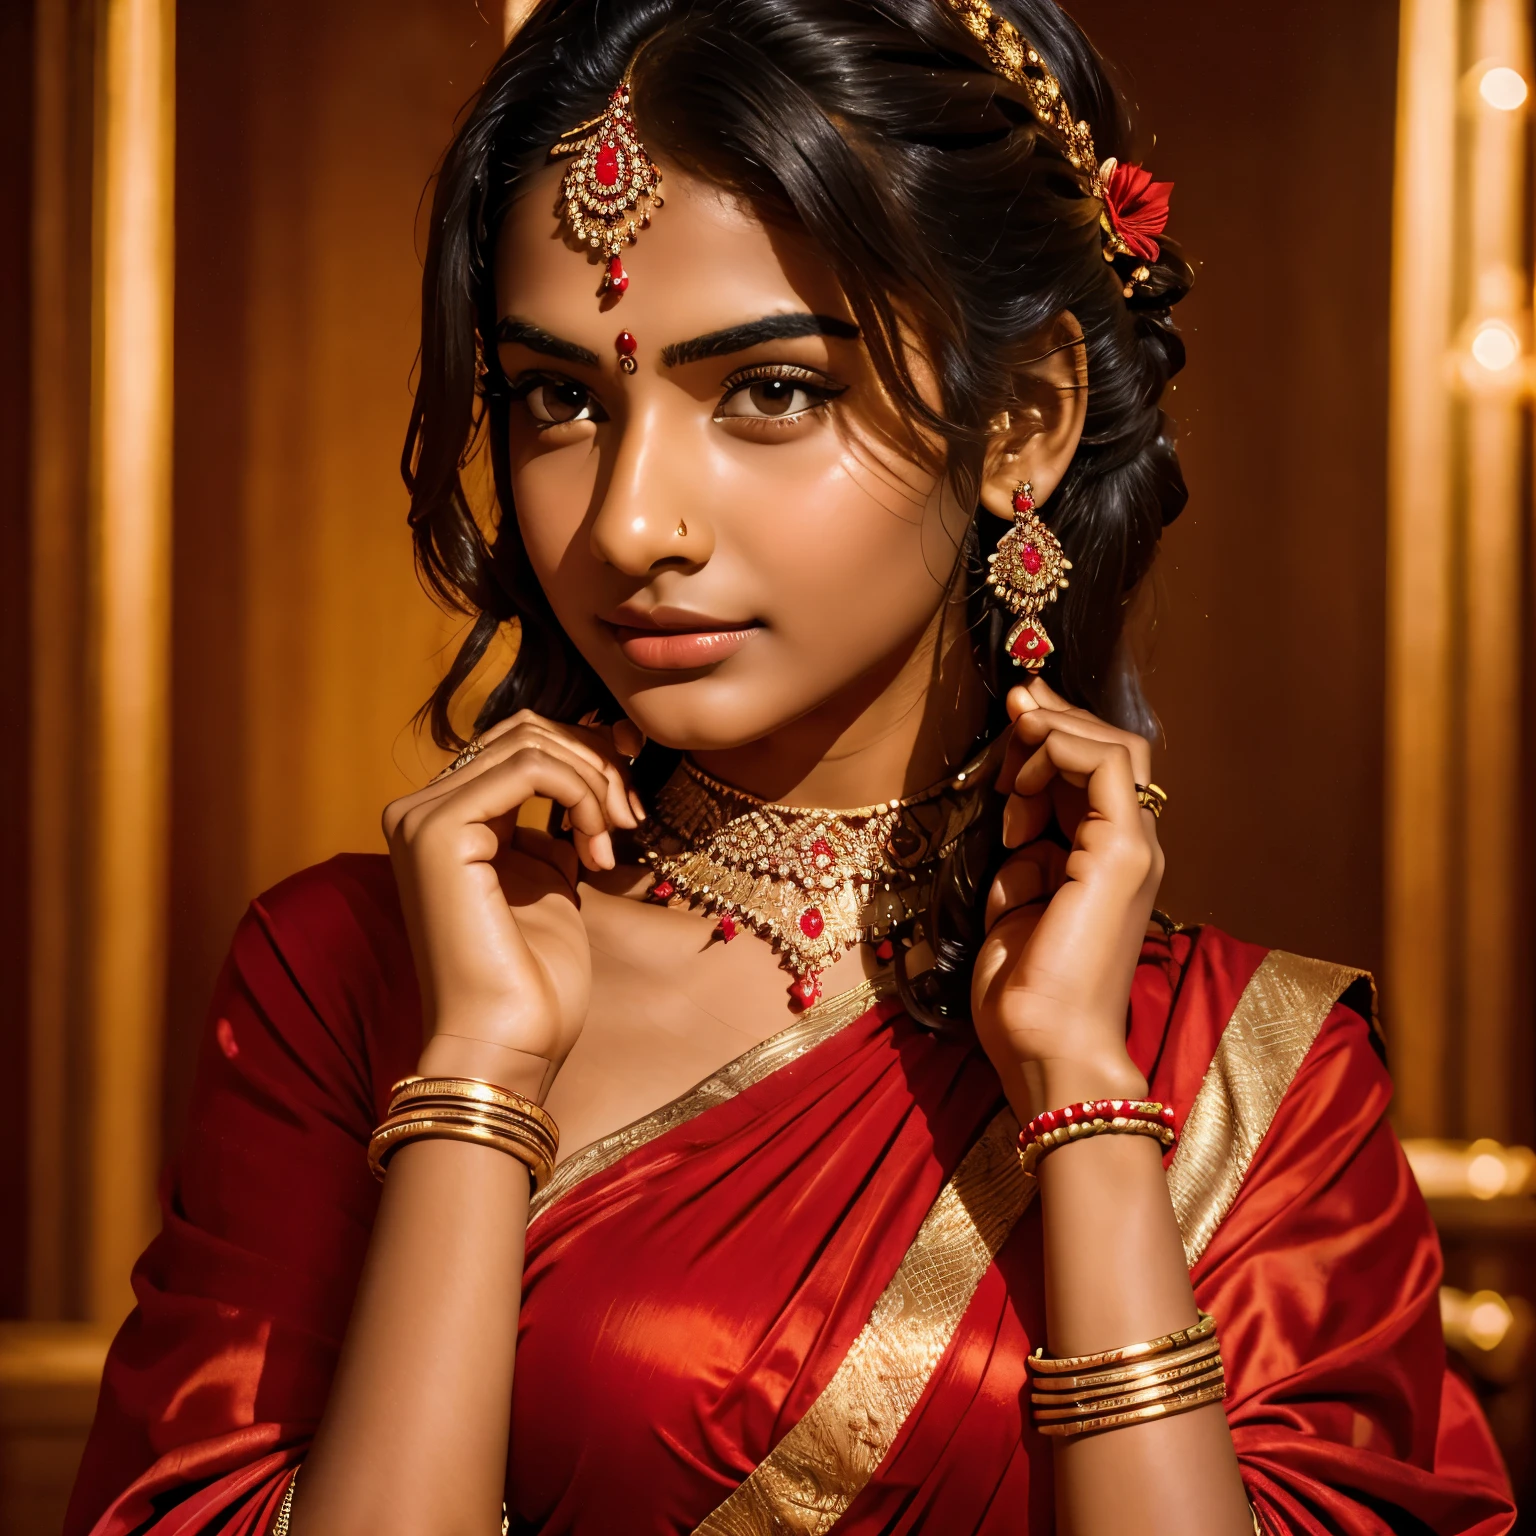 一名 16 岁的印度女孩用手遮住脸，戴着珠宝和红色连衣裙，穿着逼真的印度服装, 现实背景, 8K 分辨率, 完美肌肤纹理